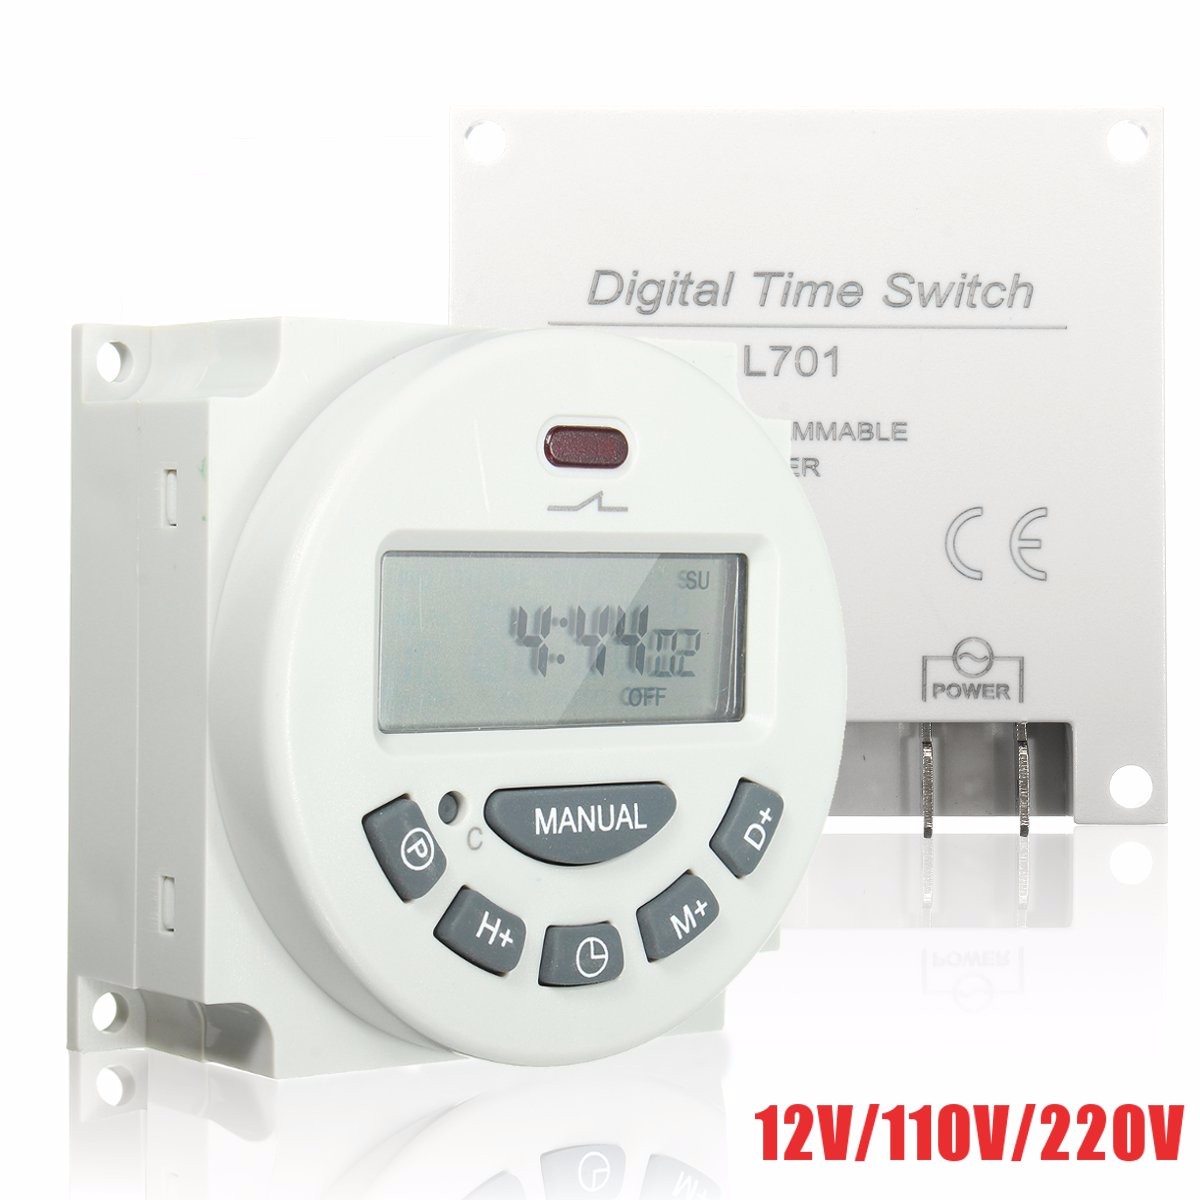 Digital time switch